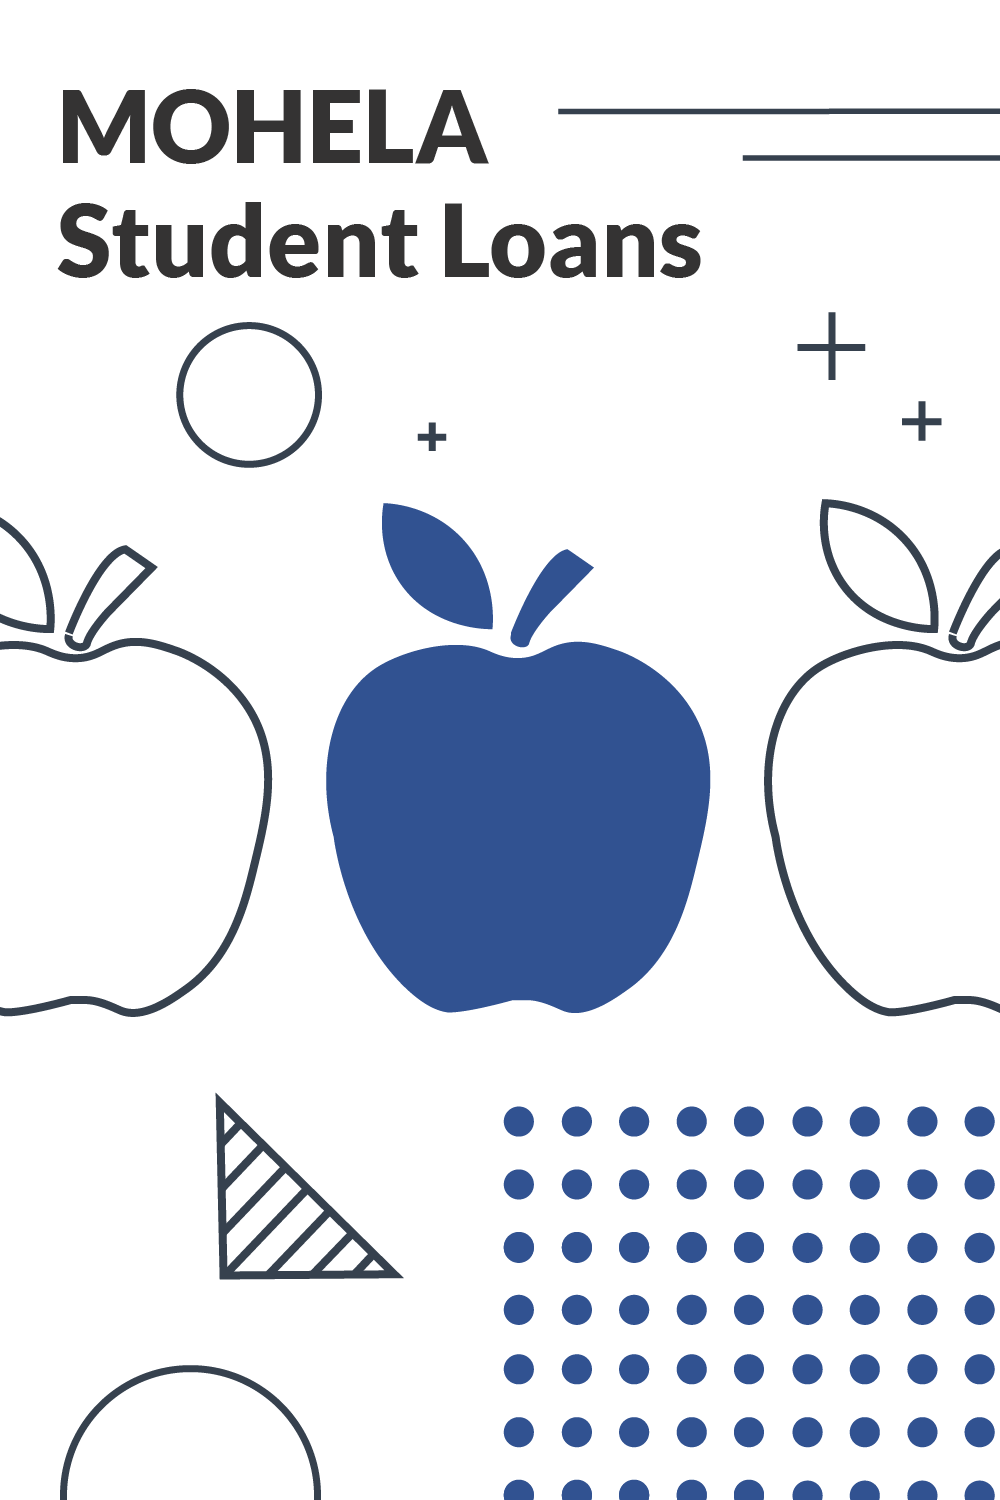 MOHELA Student Loan